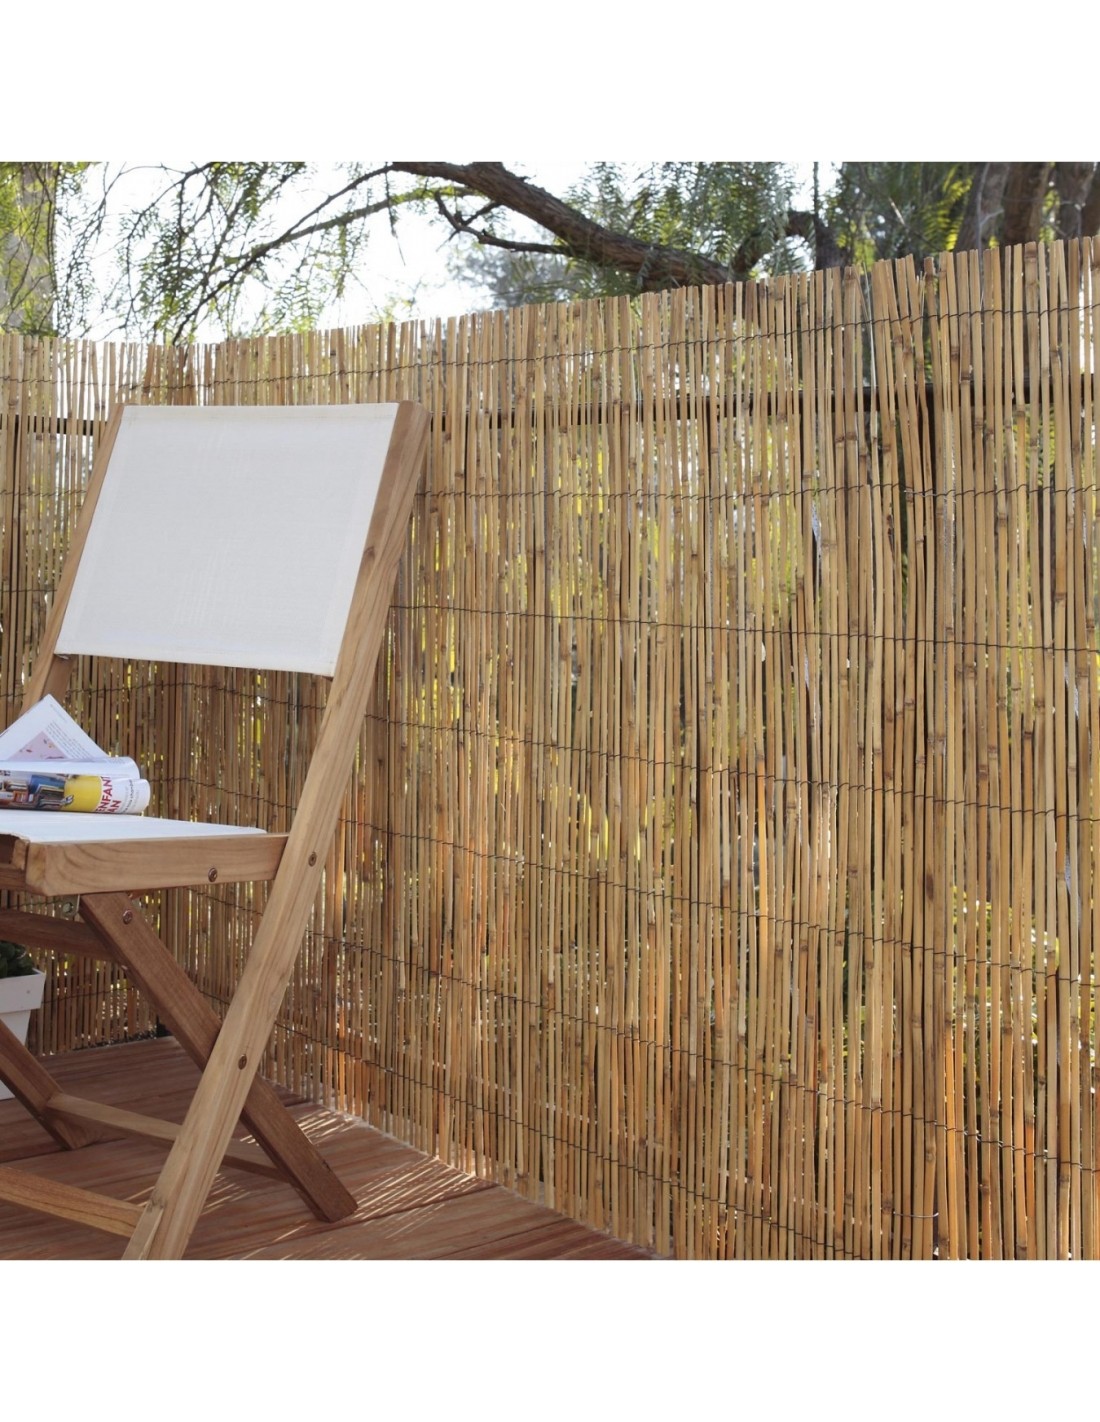 Rouleau de 2x5 m Canisse en bambous naturel fendu - Nature